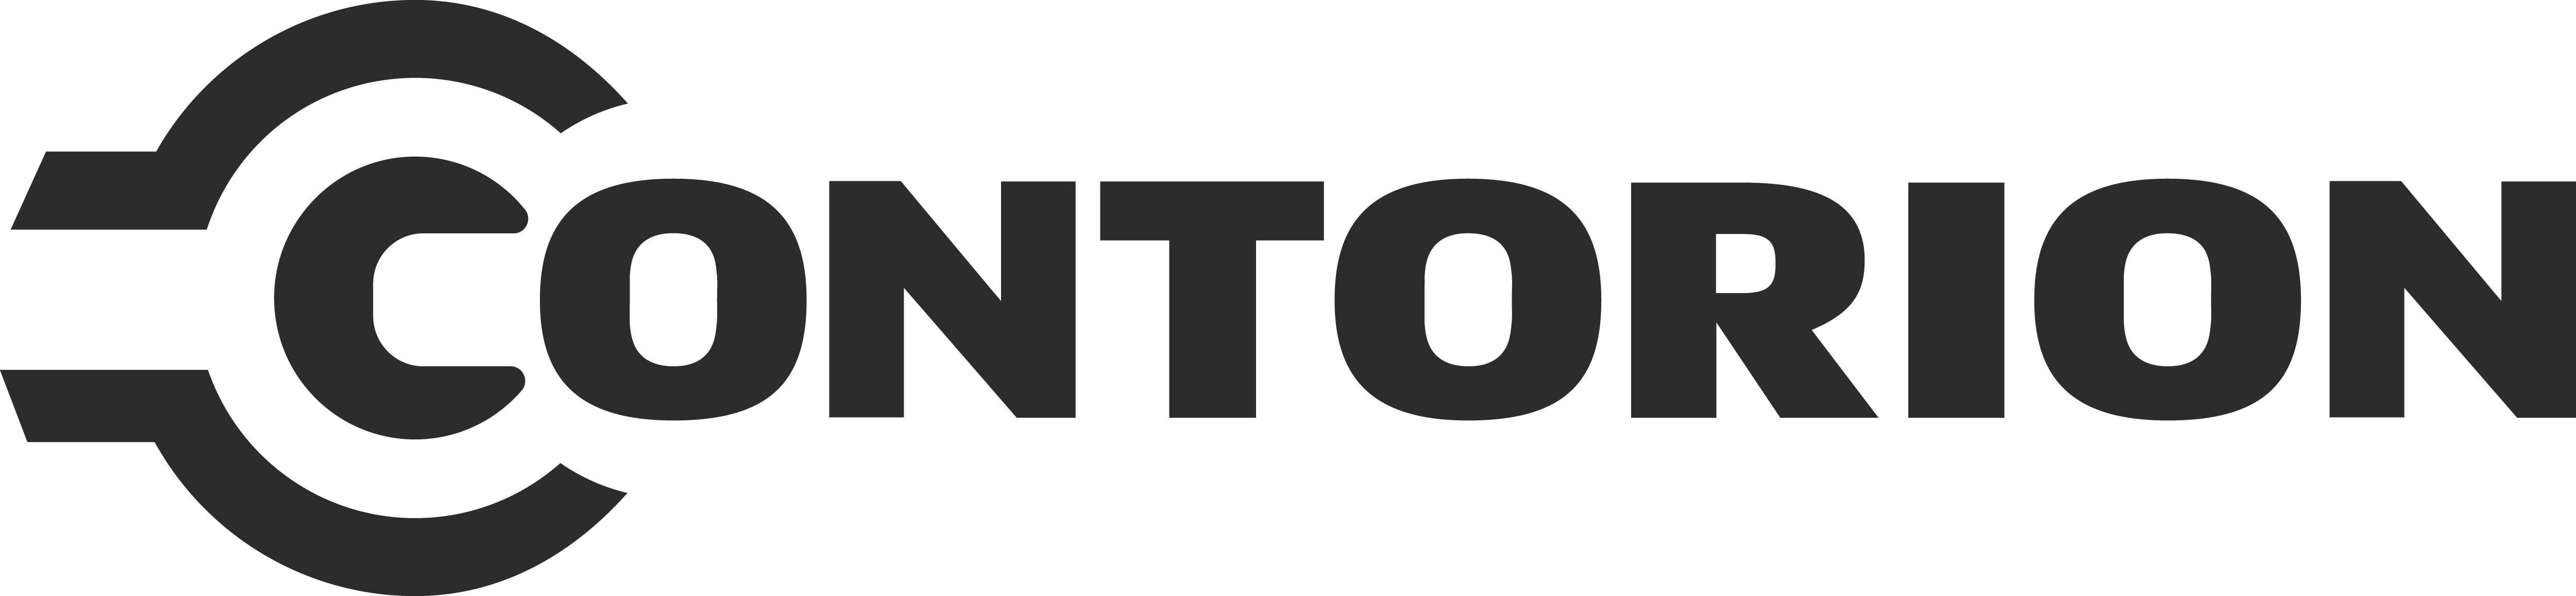 Logo - Contorion GmbH